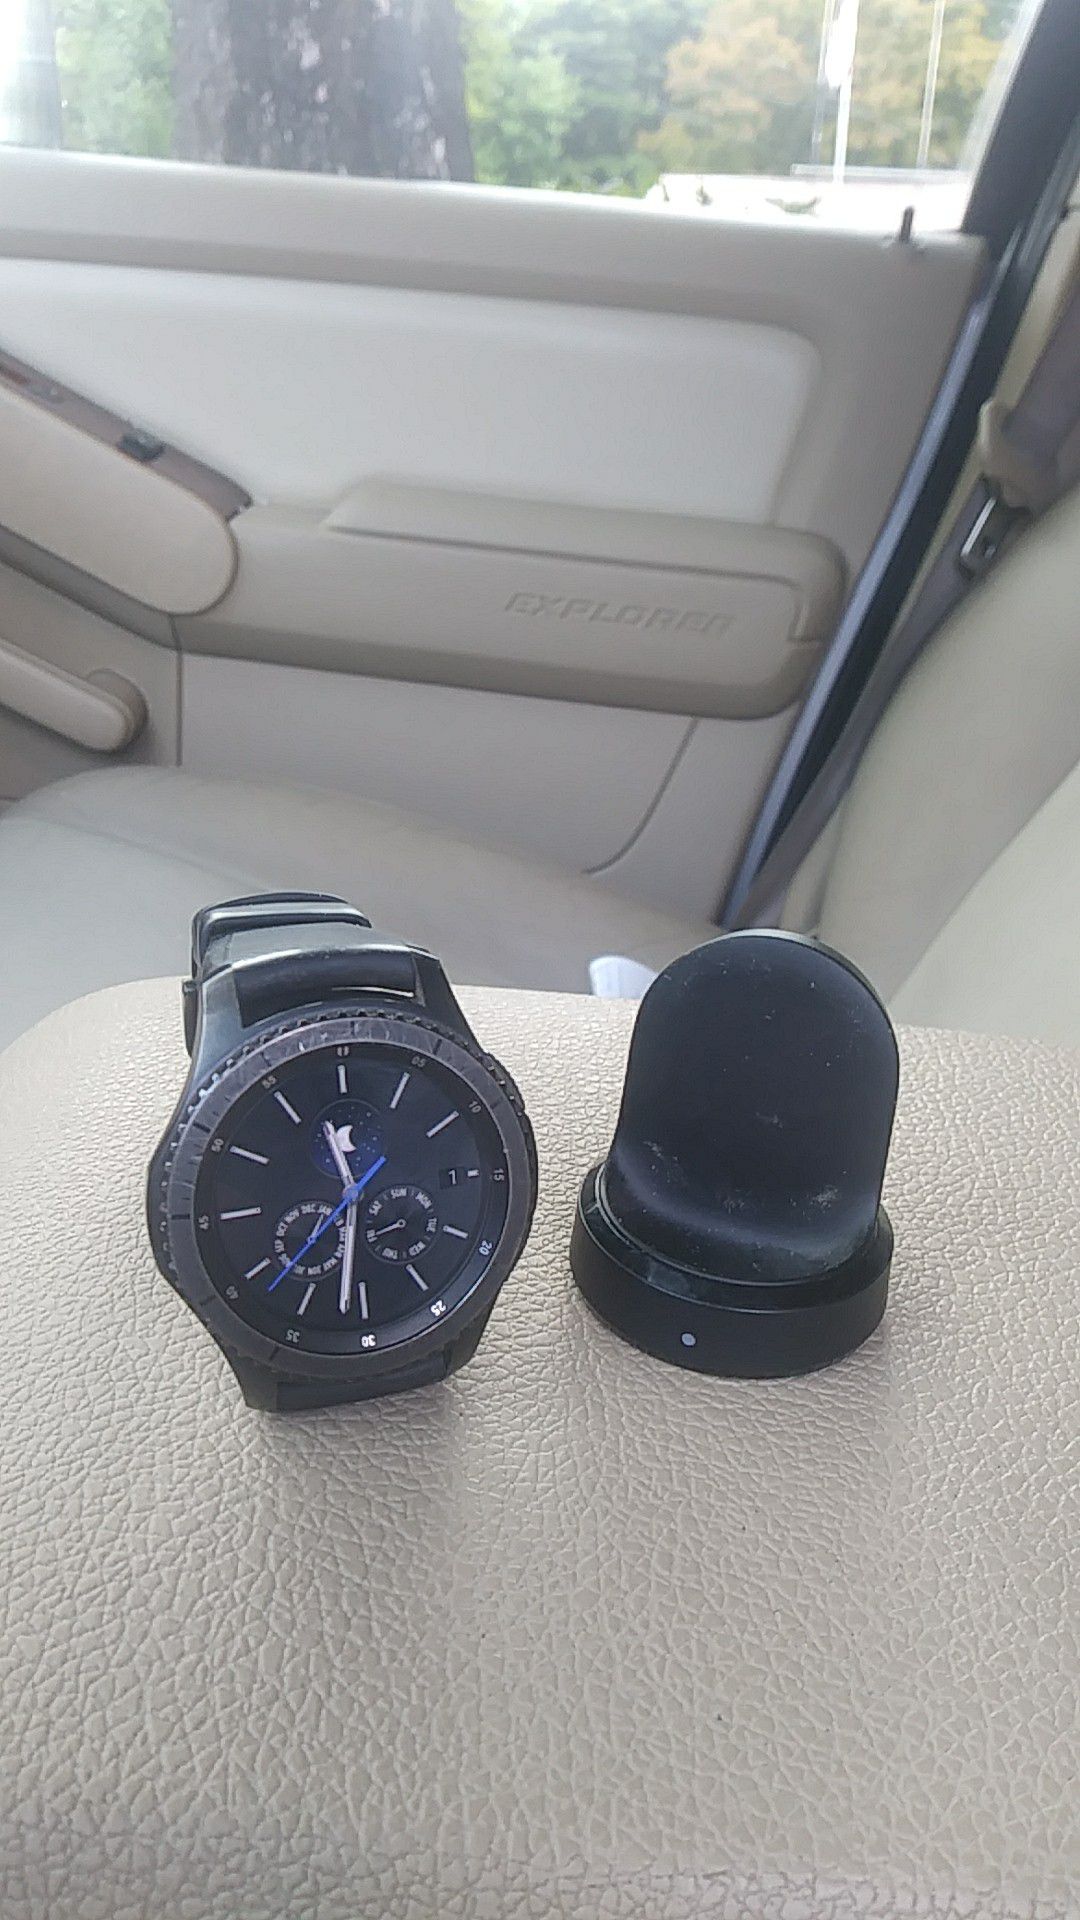 Samsung g3 smartwatch